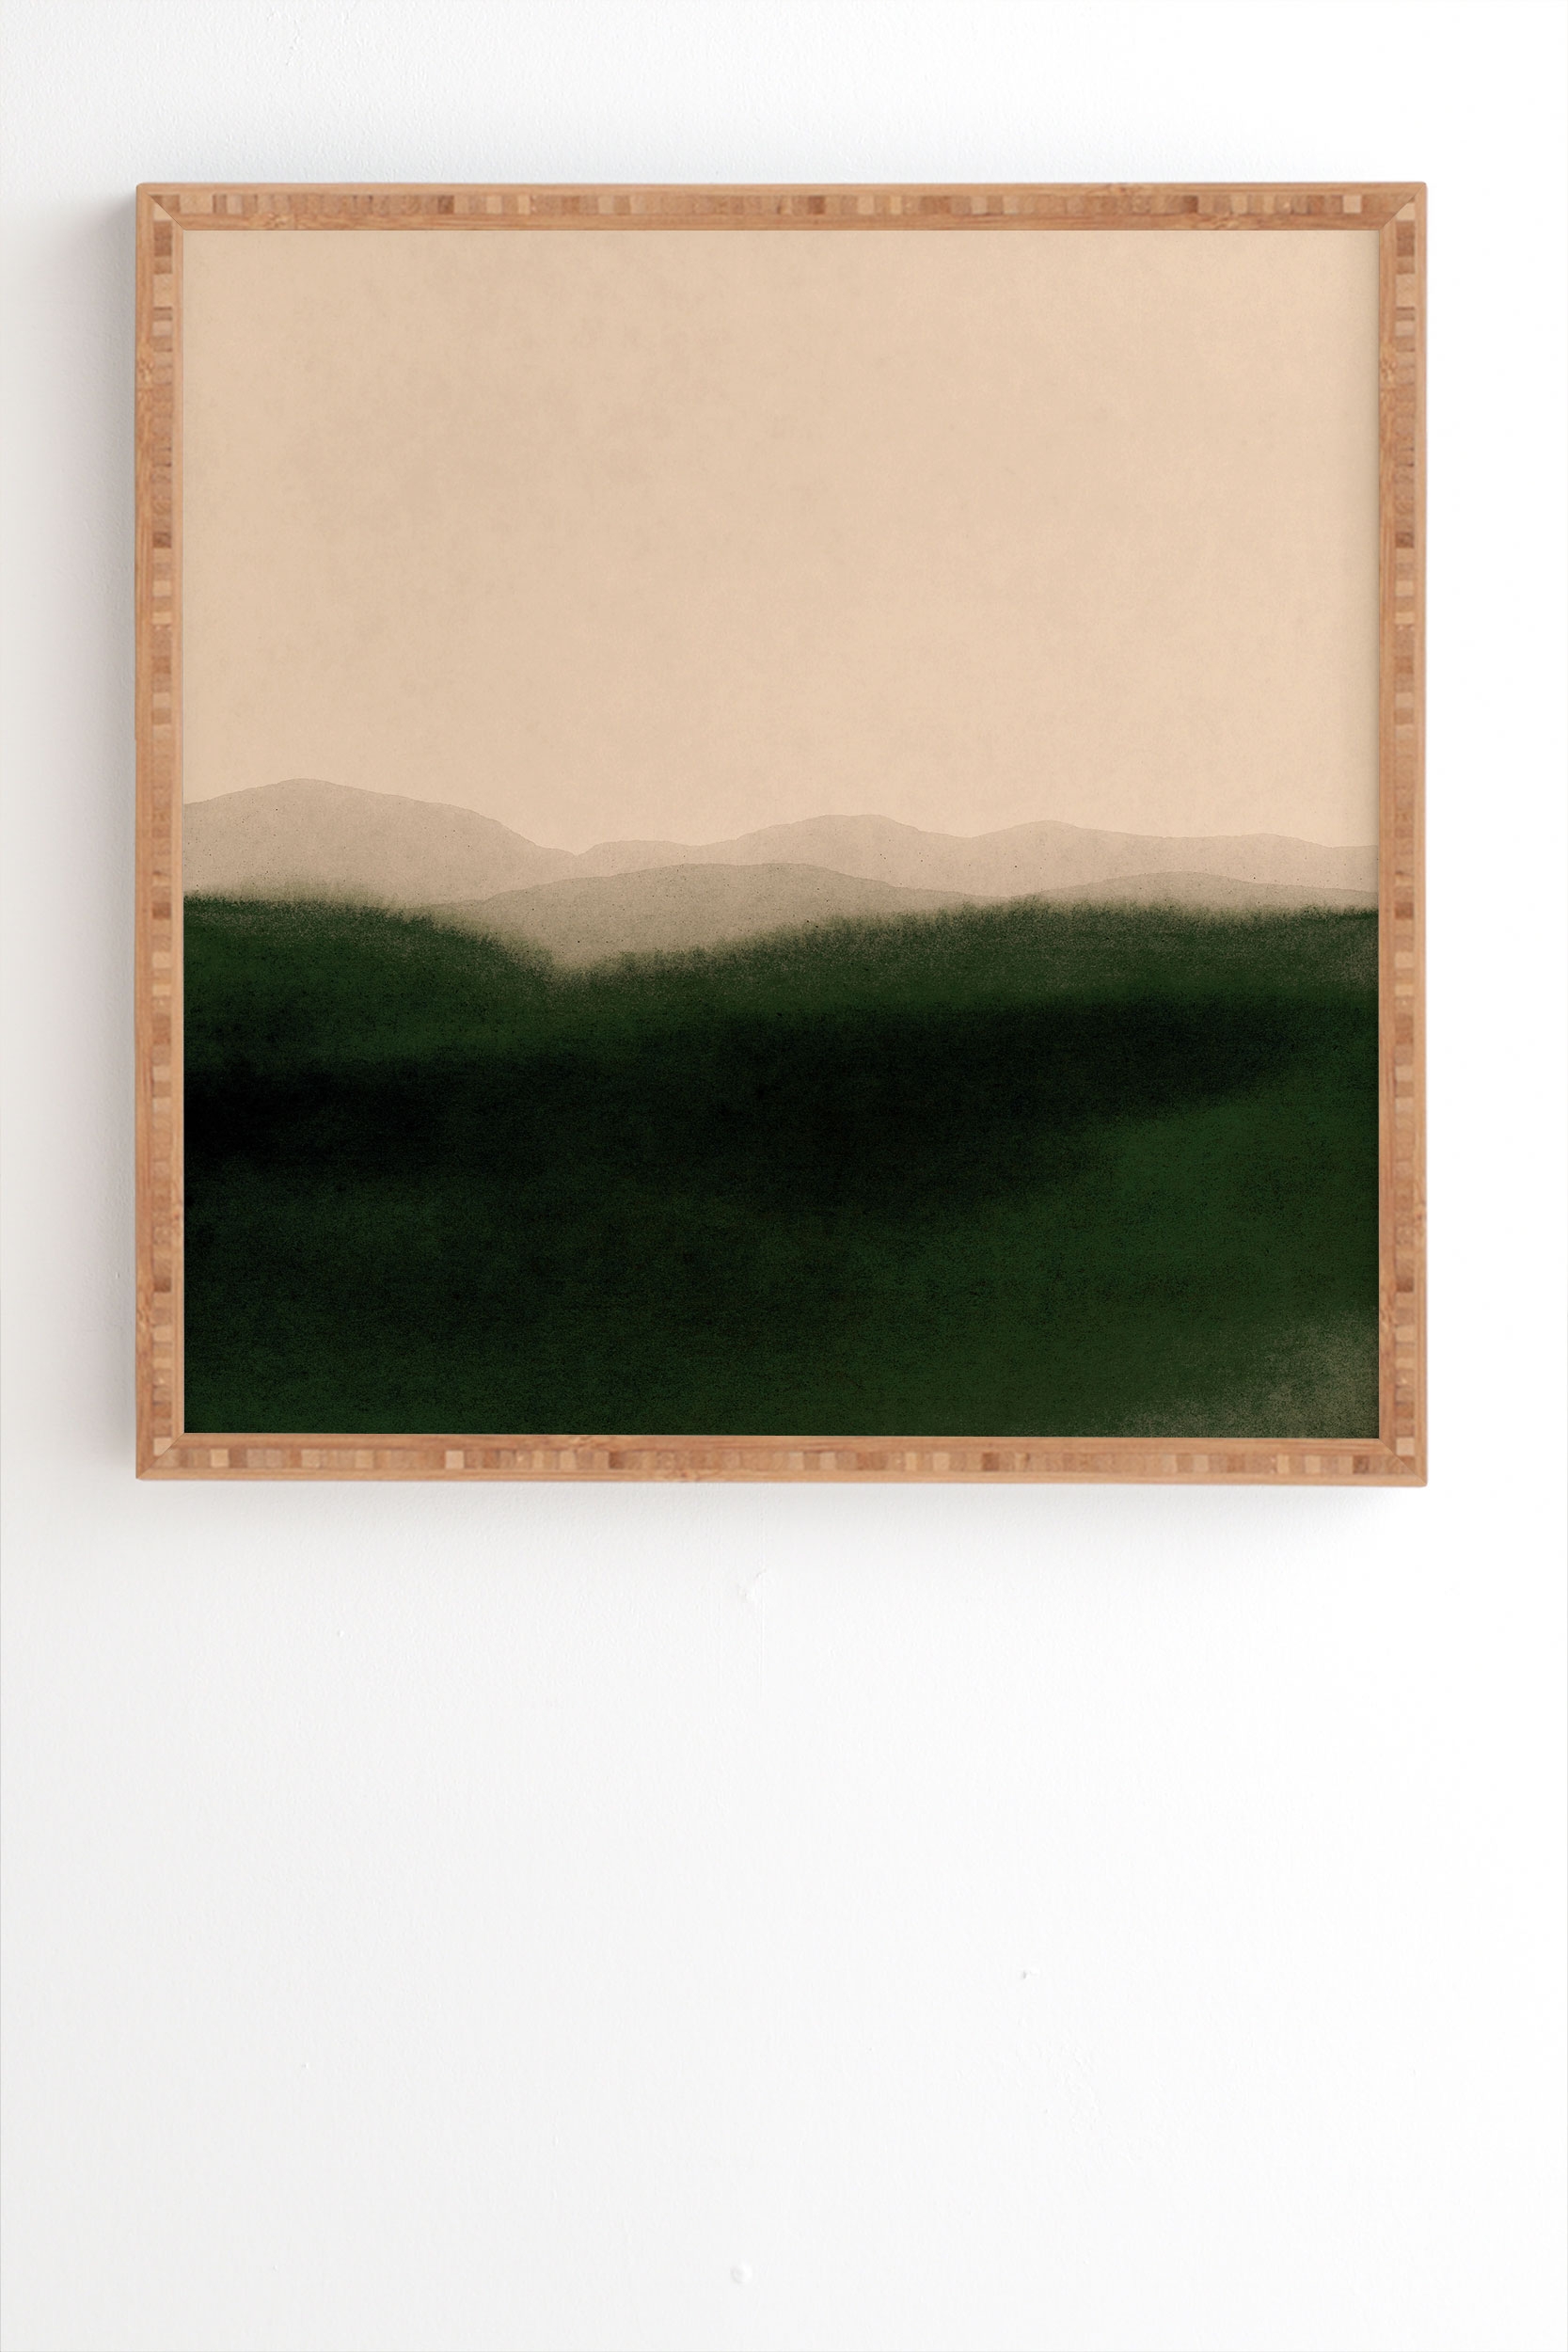 Green Hills by Iris Lehnhardt - Framed Wall Art Bamboo 30" x 30" - Image 1